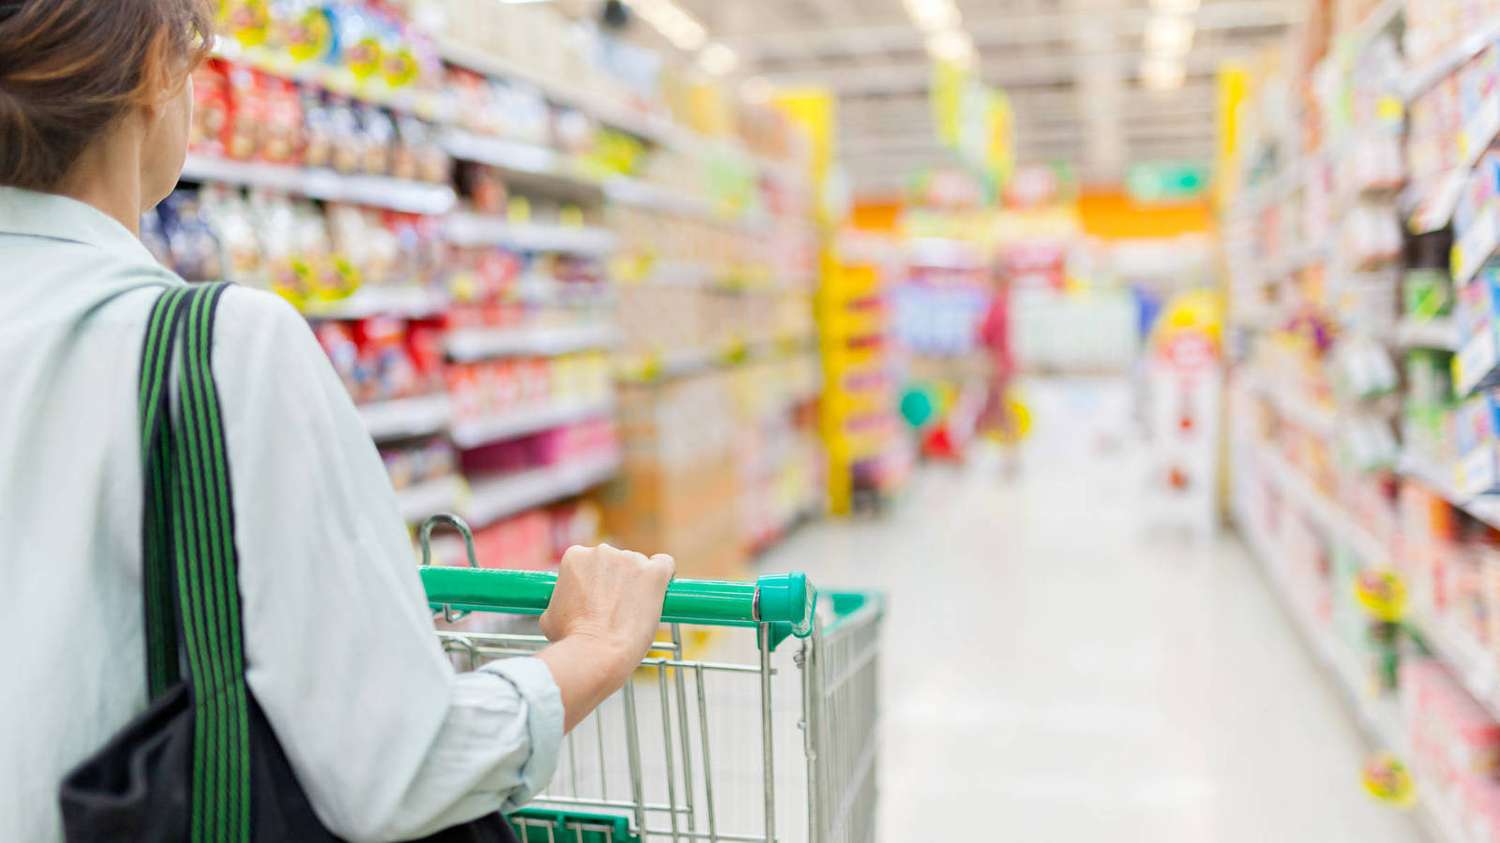 Ventas en supermercados bajaron 2,2 por ciento en octubre